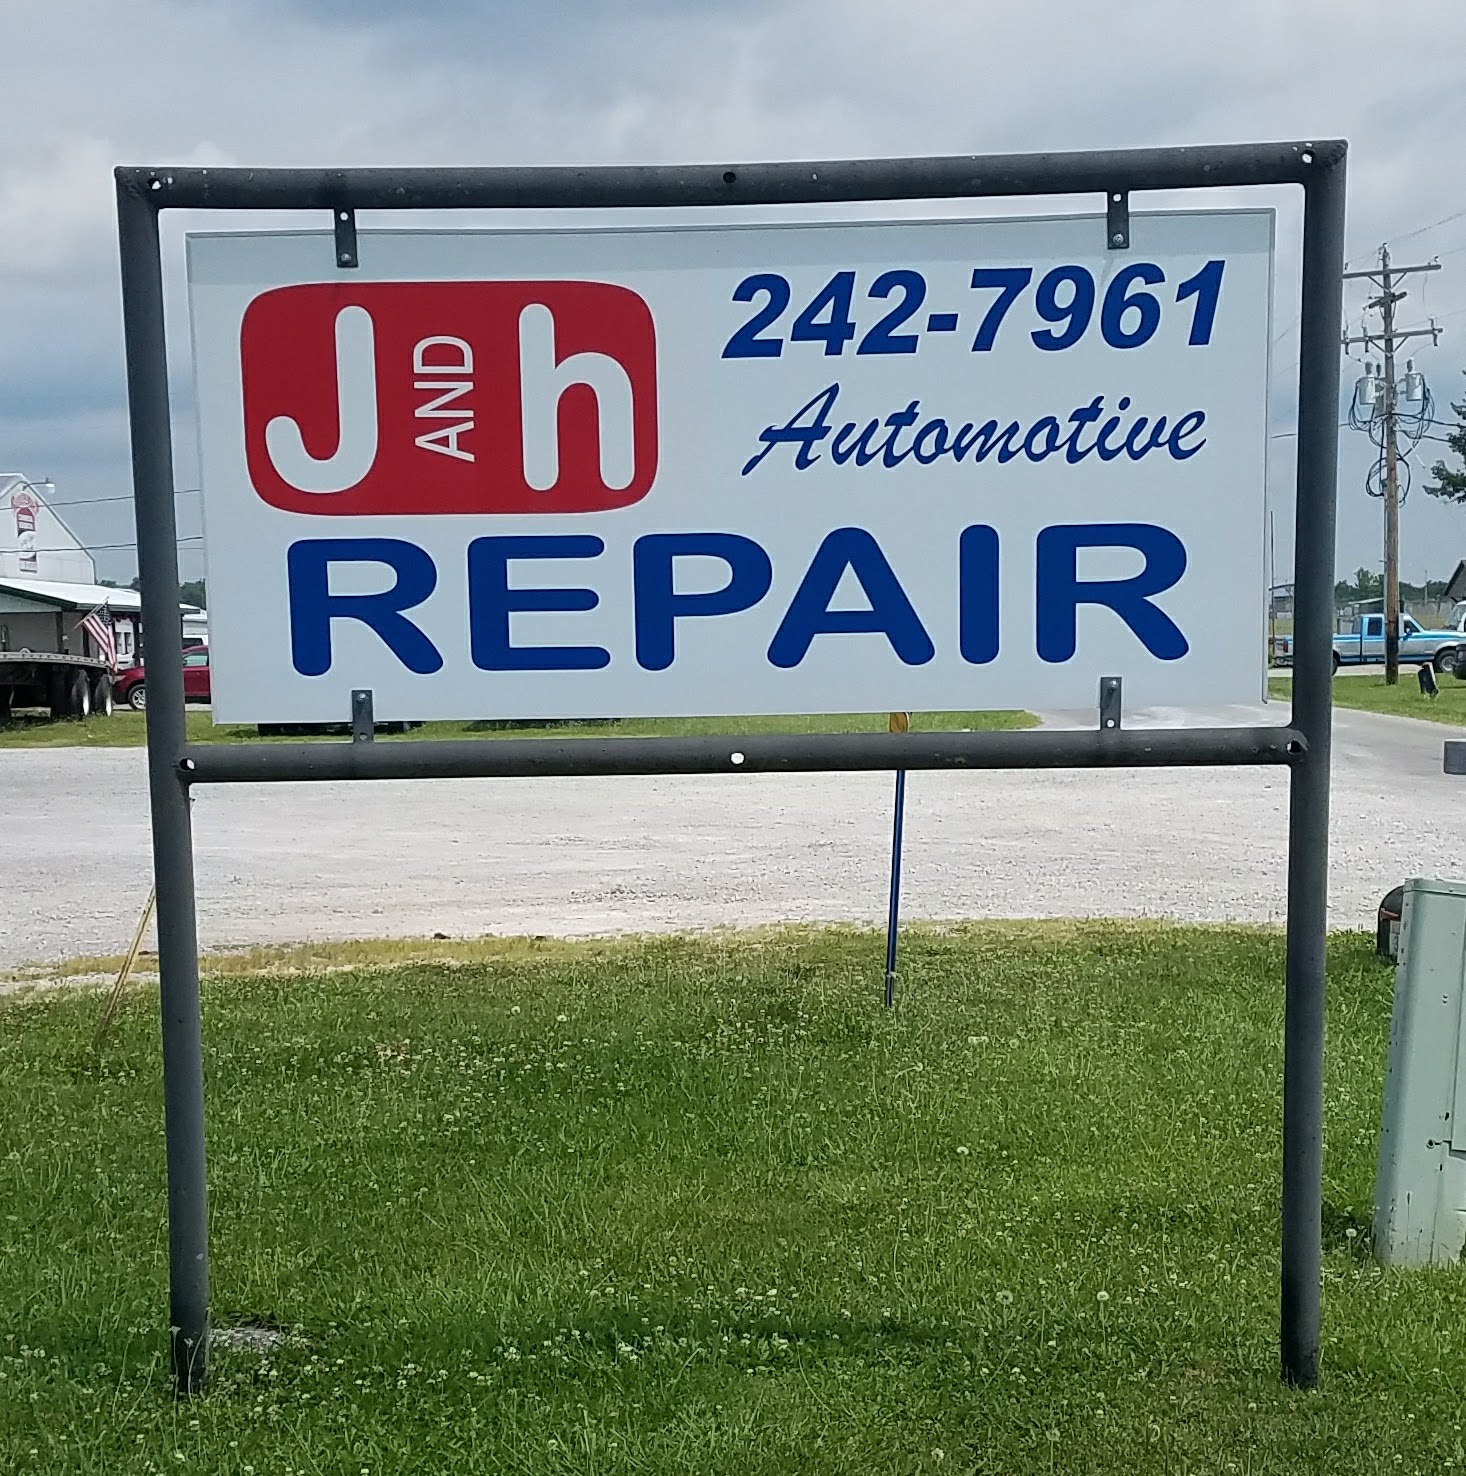 J & H Repair